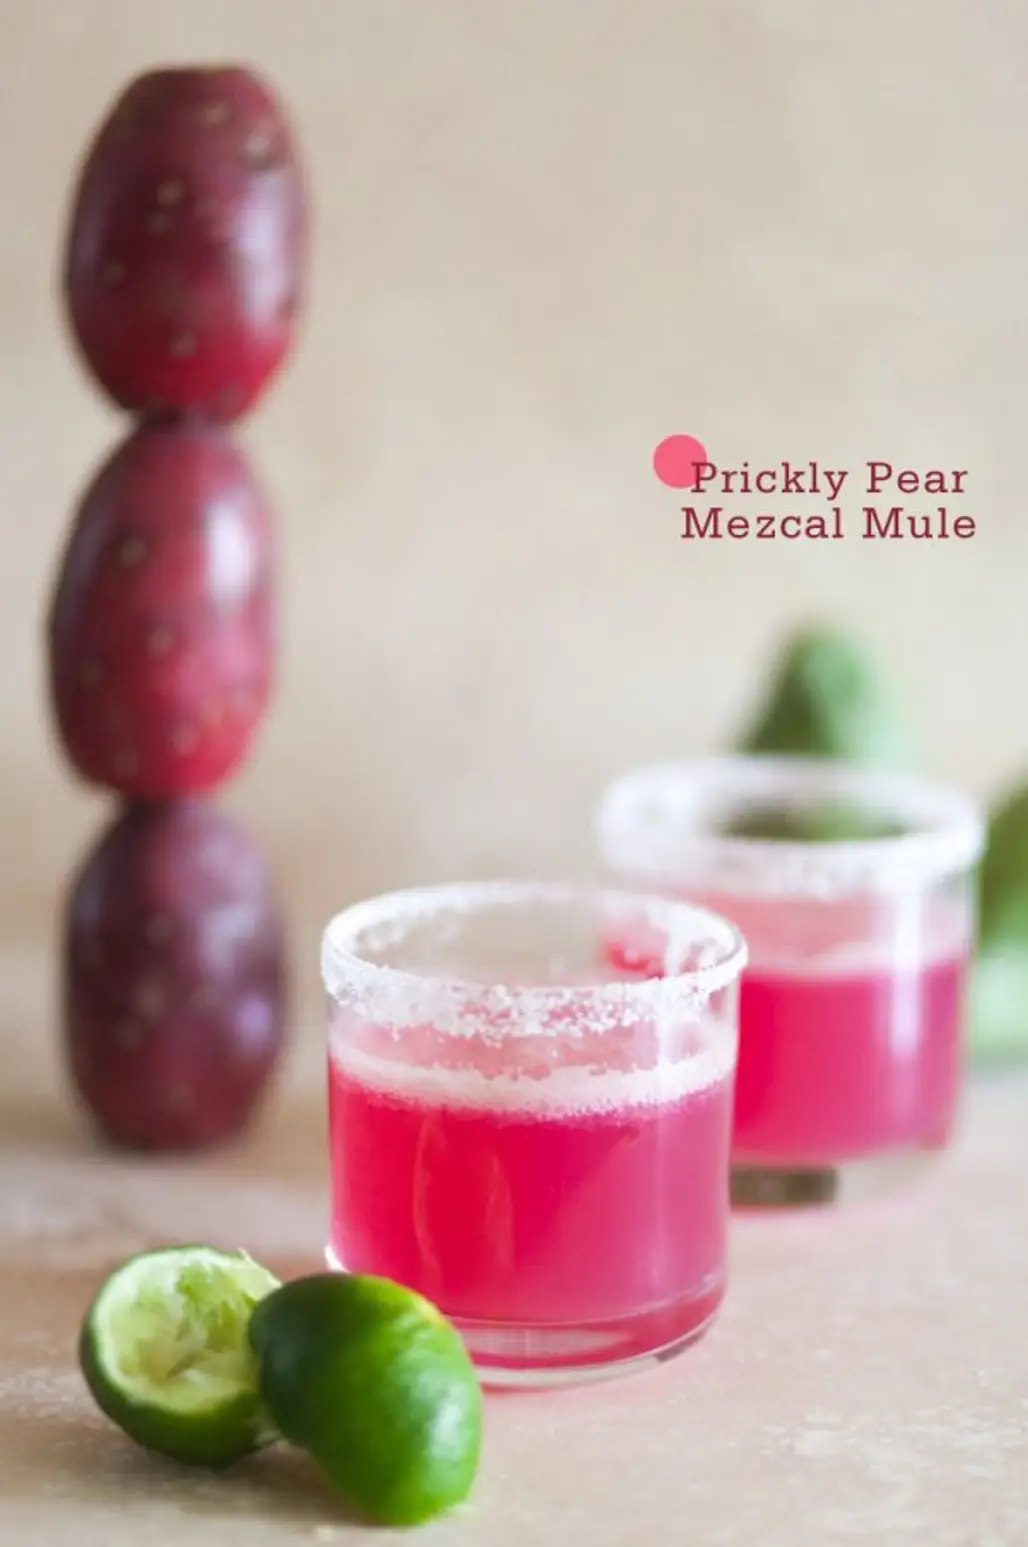 Prickly Pear Mezcal Mule